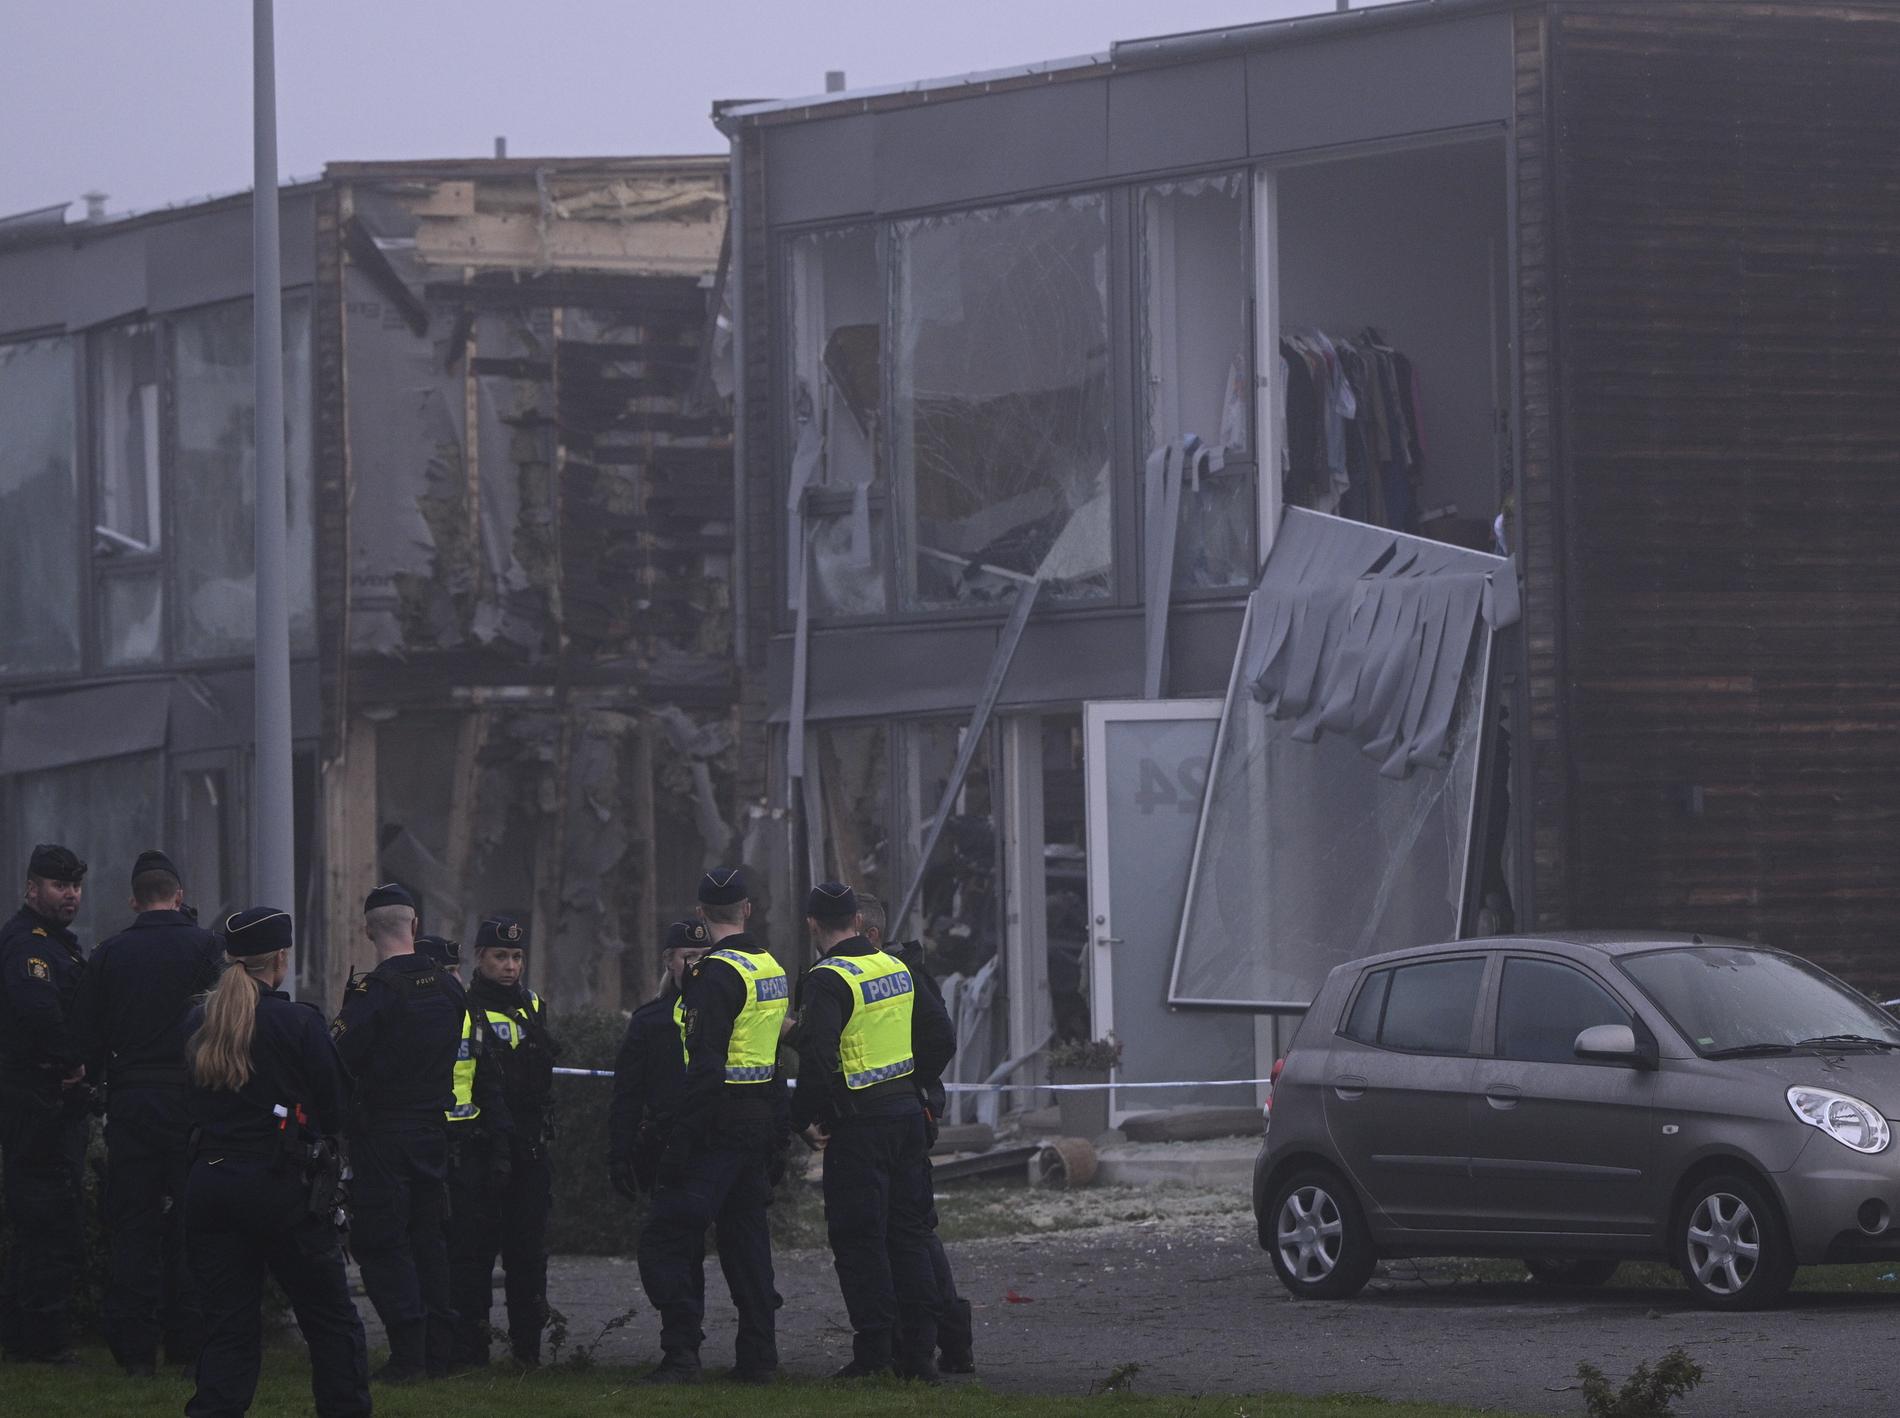 Utbombede leiligheter i Uppsala torsdag morgen. Gjengkrigene tar stadig flere liv. I september er så langt minst 13 personer myrdet.